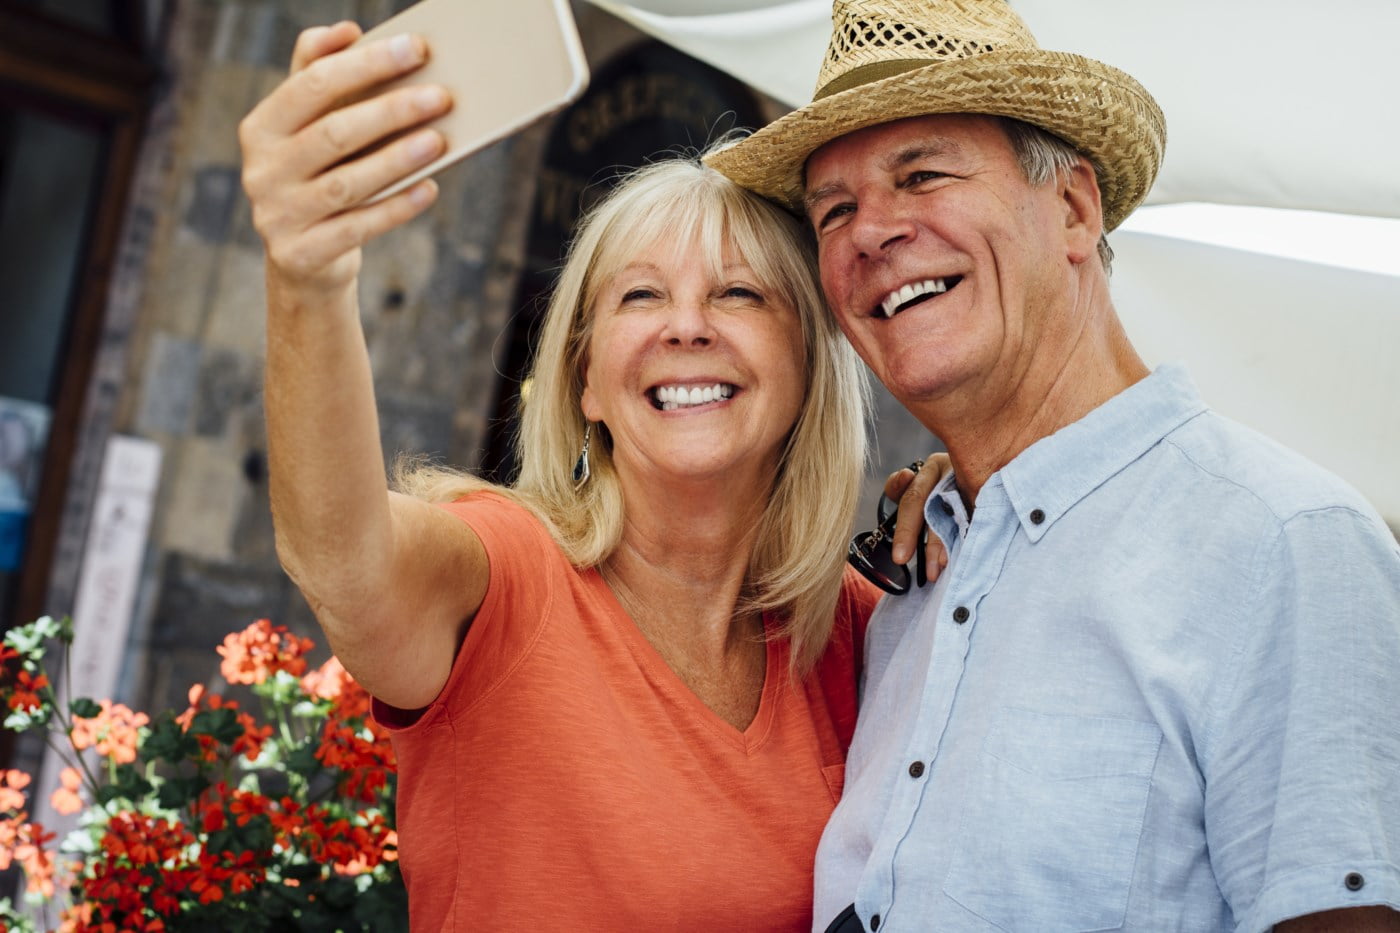 Eldre par tar en selfie mens de smiler bredt. Kvinnen i oransje t-skjorte og mannen i lyseblå skjorte, begge med sommerhatter, omgitt av blomster